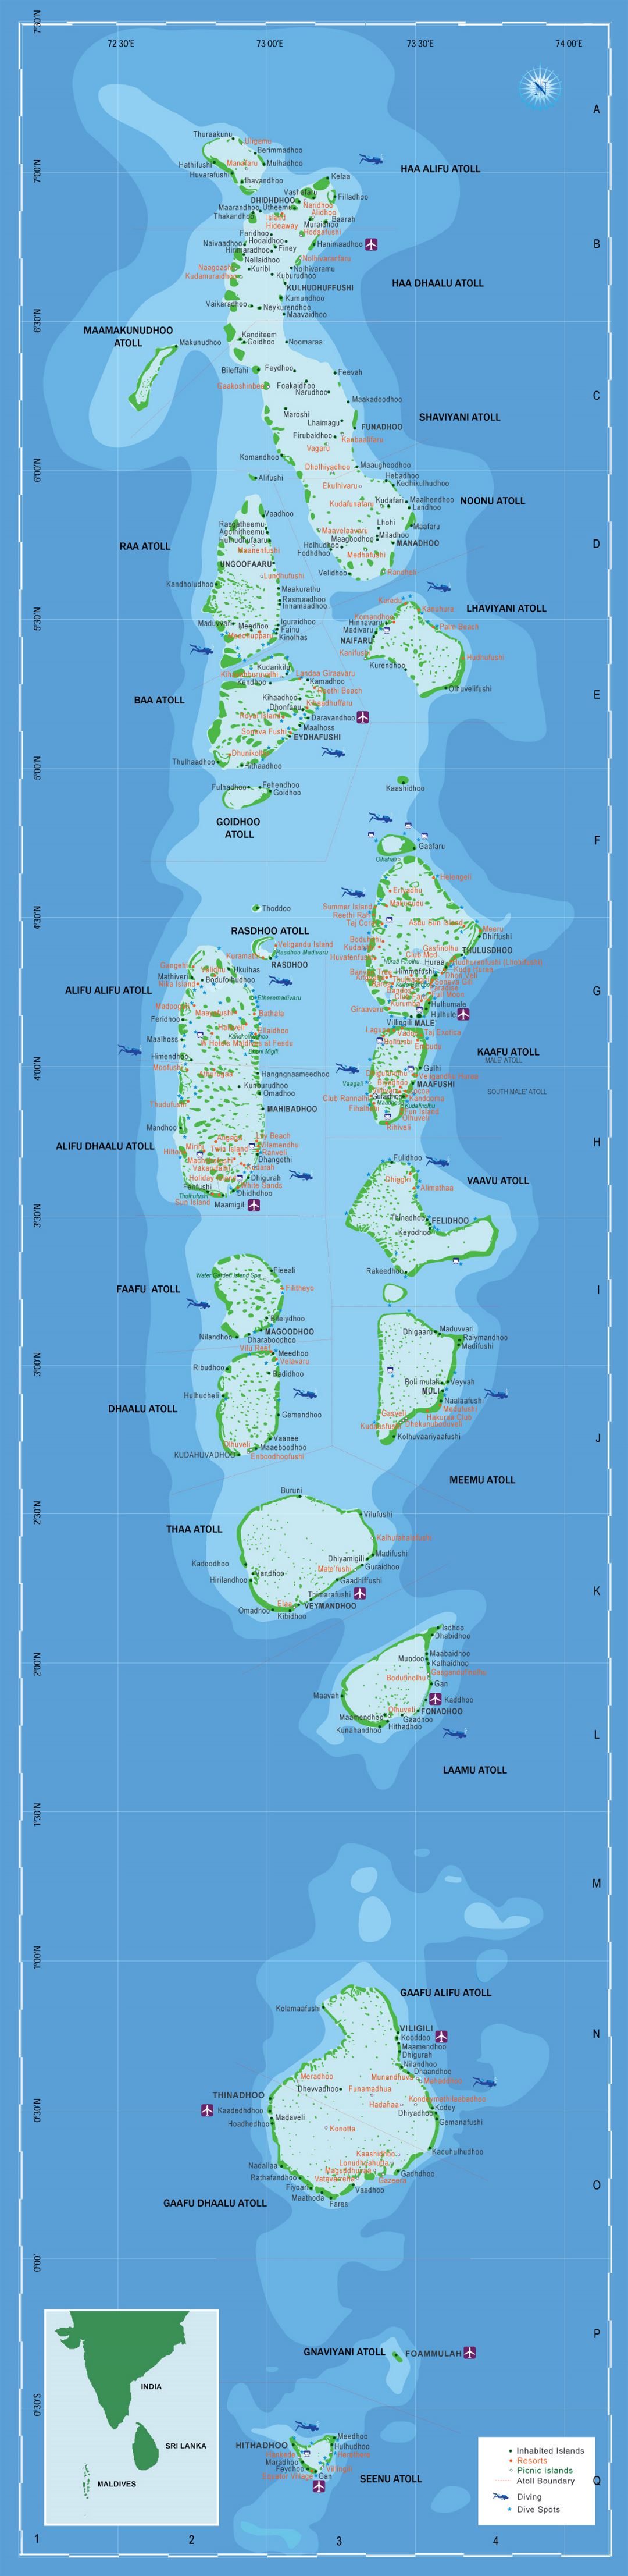 Большая туристическая карта Мальдив